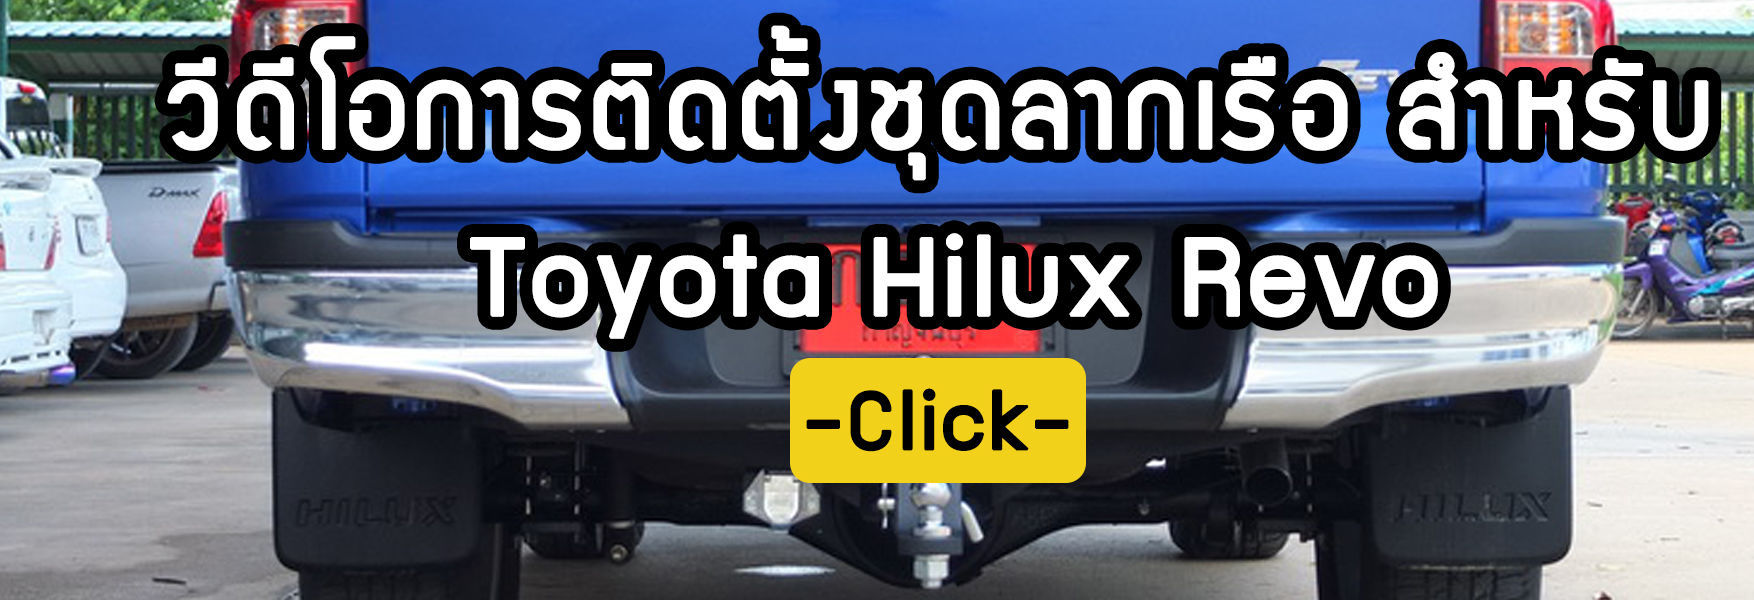 ขั้นตอนการติดตั้งชุดลากเรือ Toyota Hilux Revo